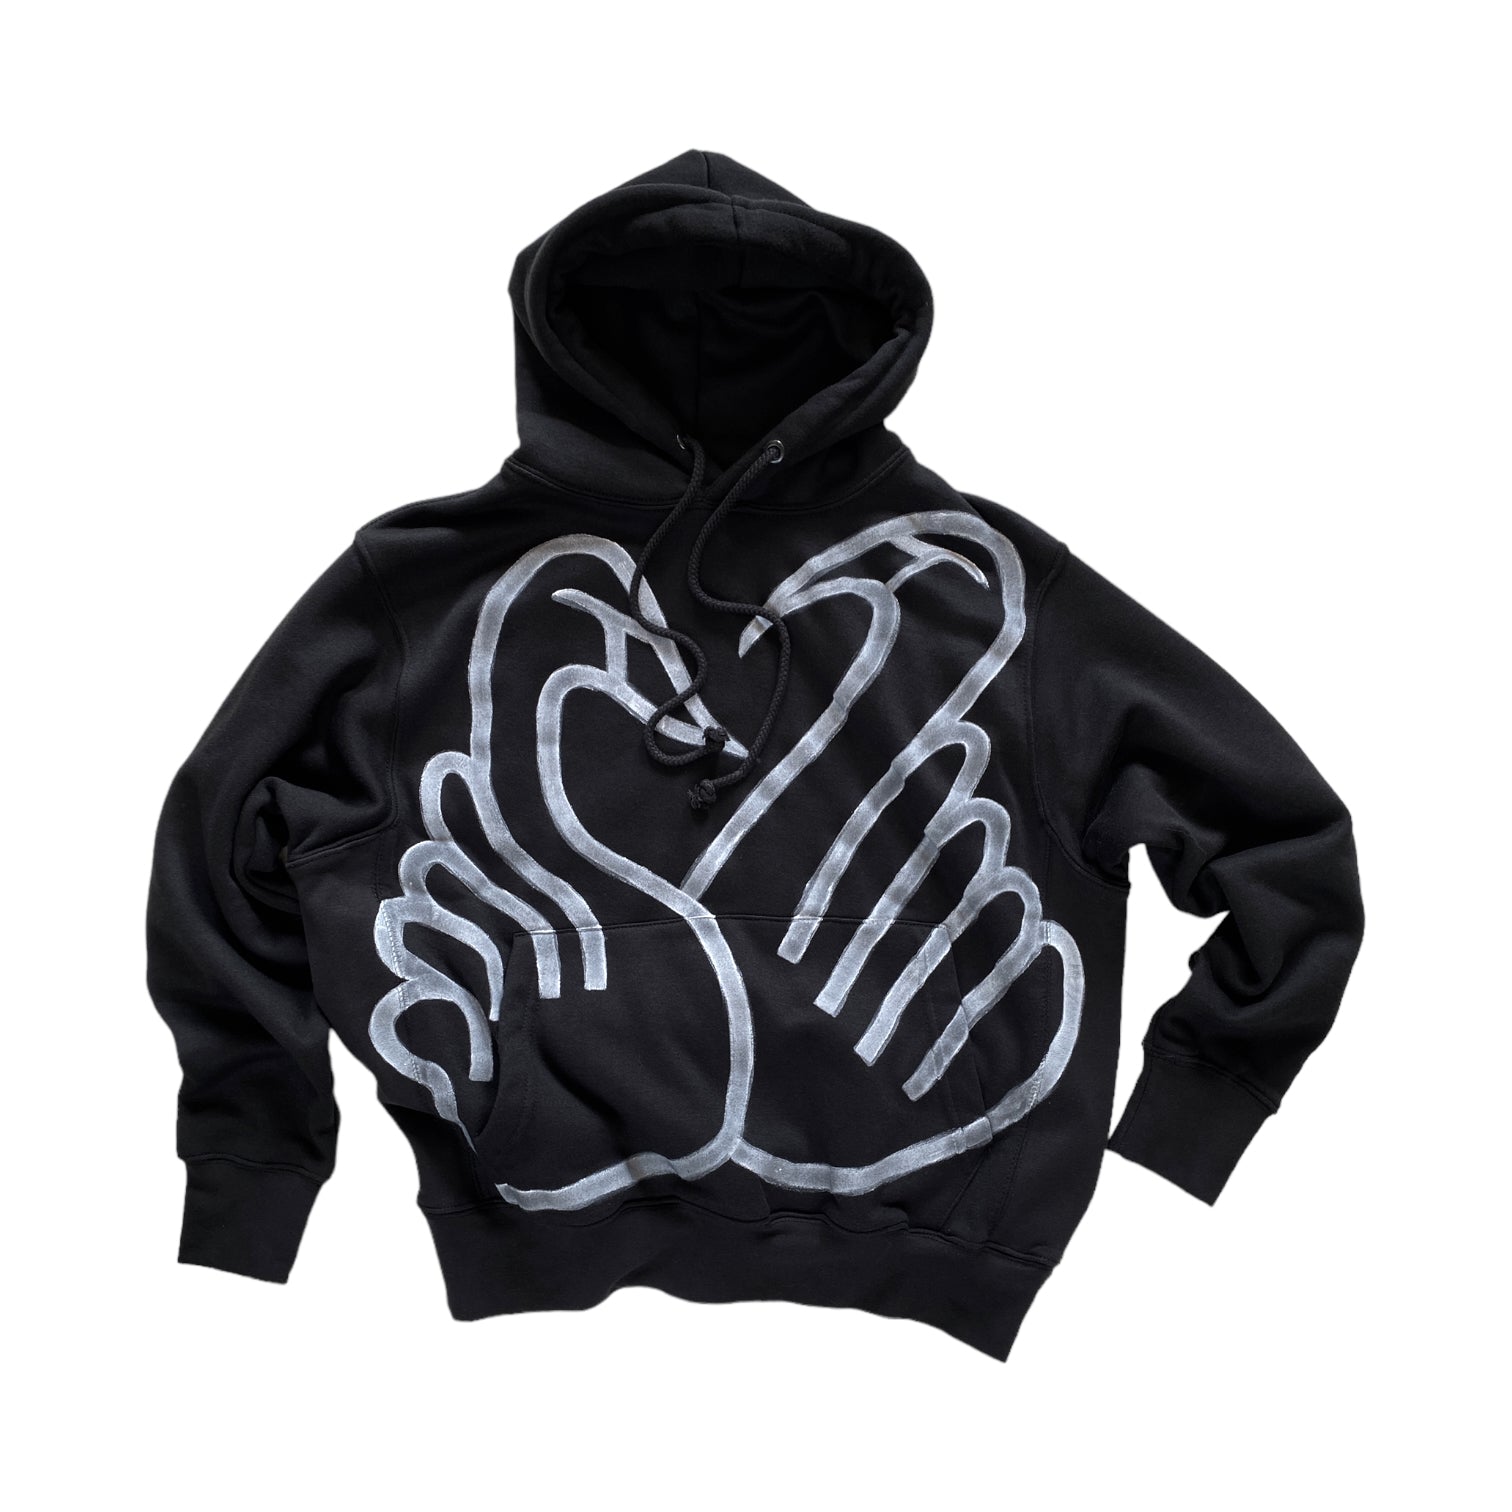 SWANS hand-painted hoodie